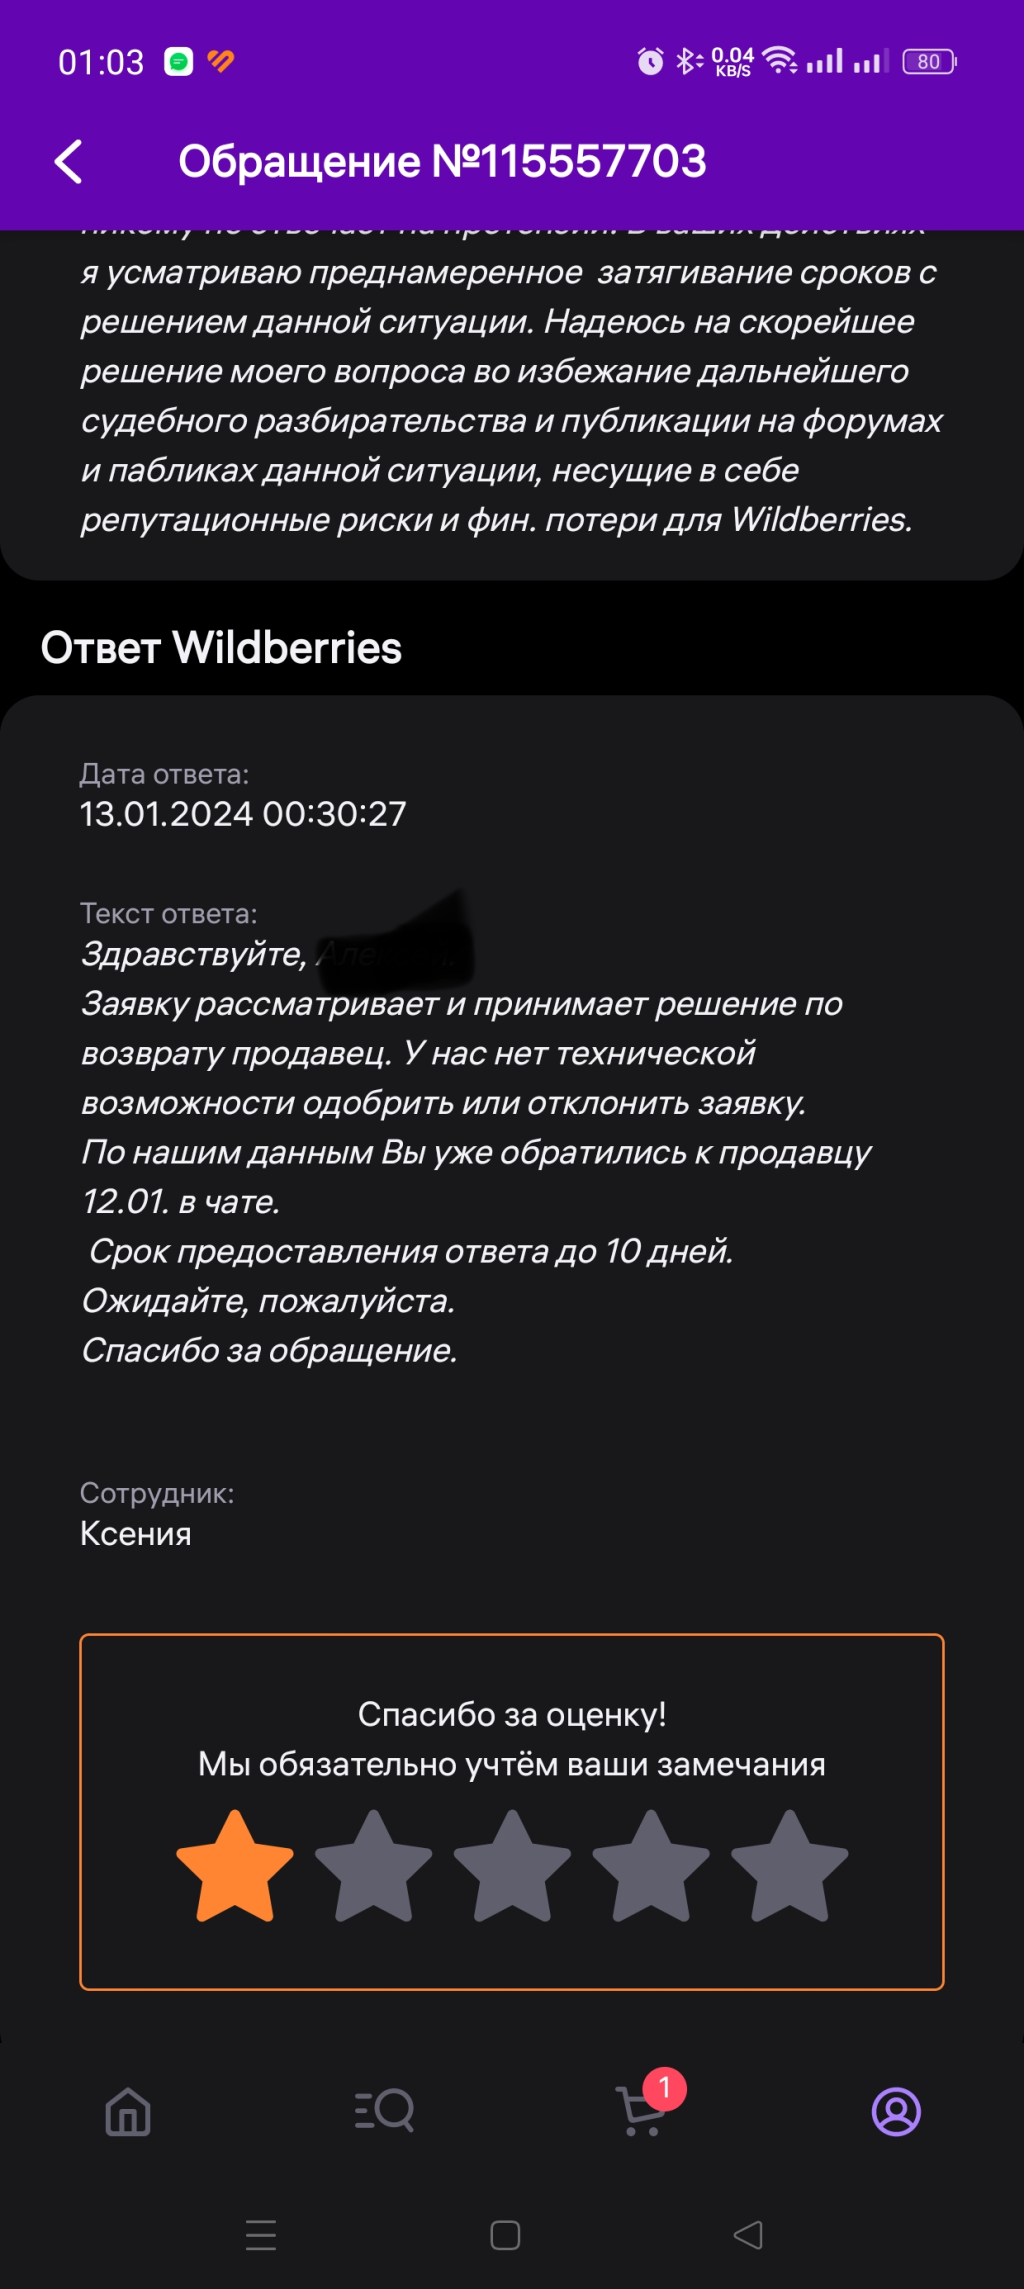 Wildberries.ru - Press f for wildberries